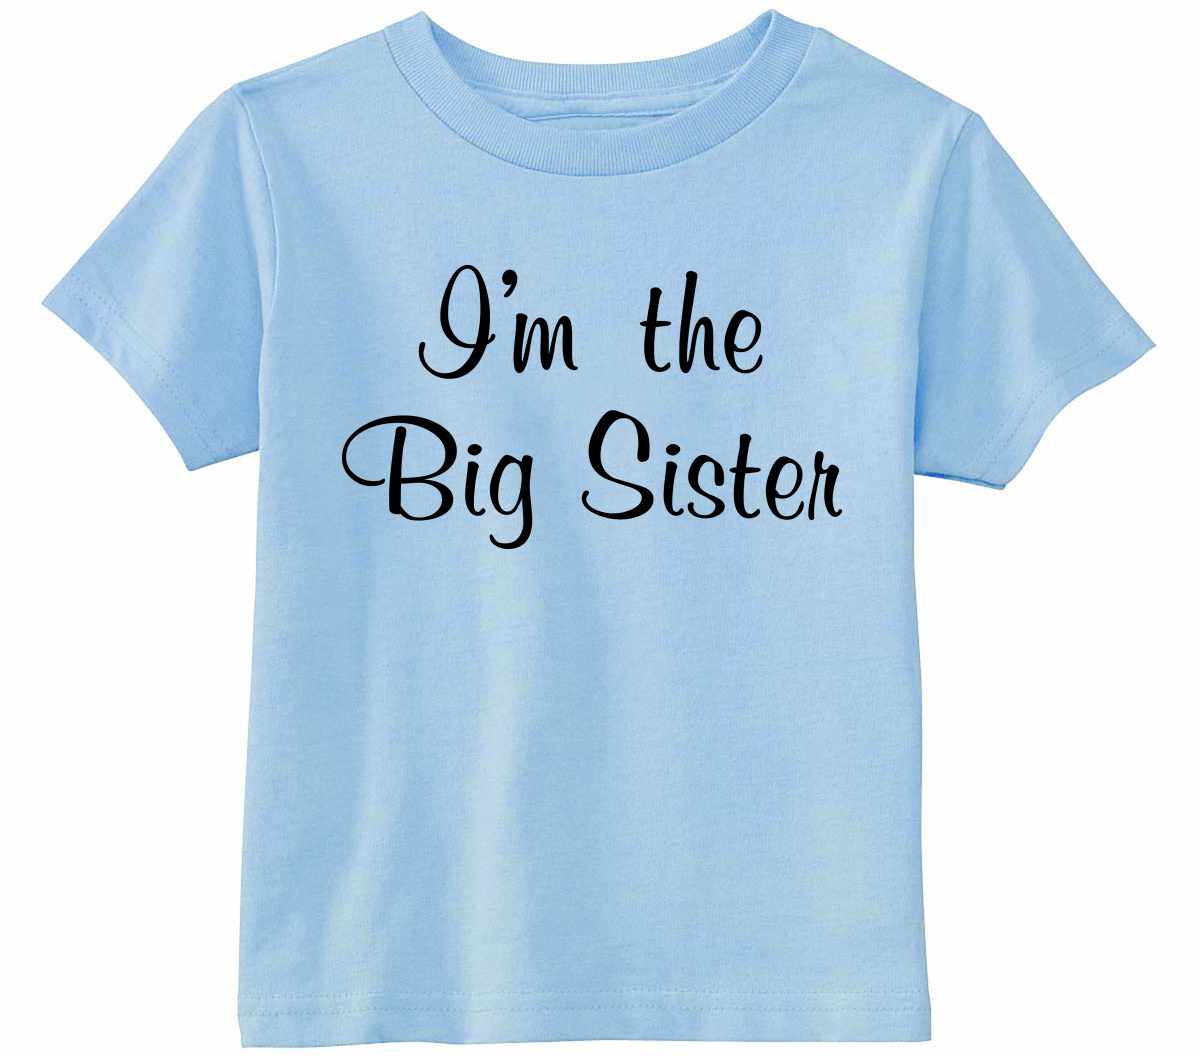 I'm the Big Sister on Infant-Toddler T-Shirt (#1245-7)